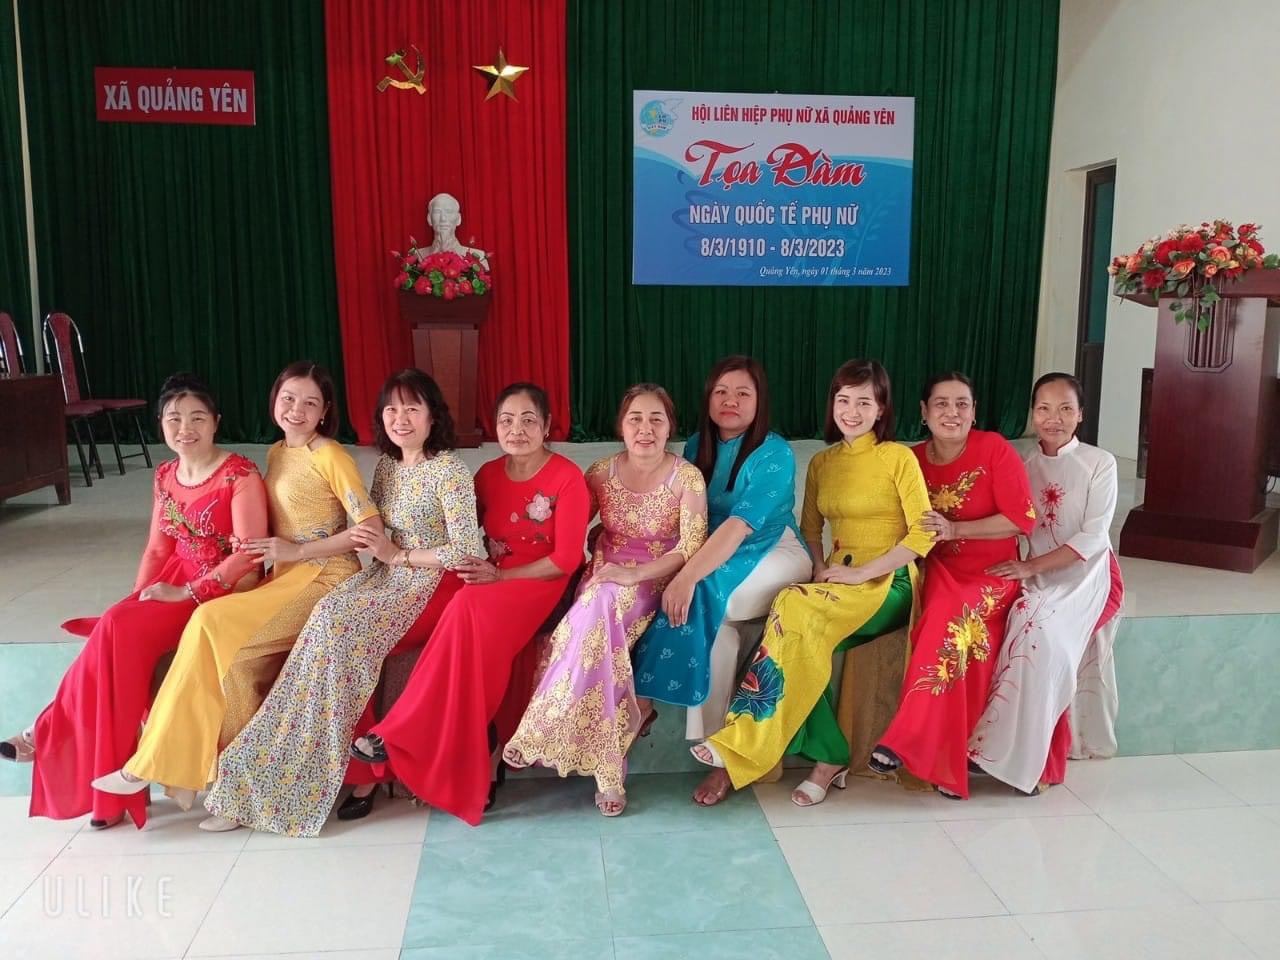 Kỷ niệm 113 năm ngày Quốc tế Phụ nữ 08/3/1910-08/3/2023 và hưởng ứng tuần lễ áo dài của Hội HLPN xã Quảng Yên